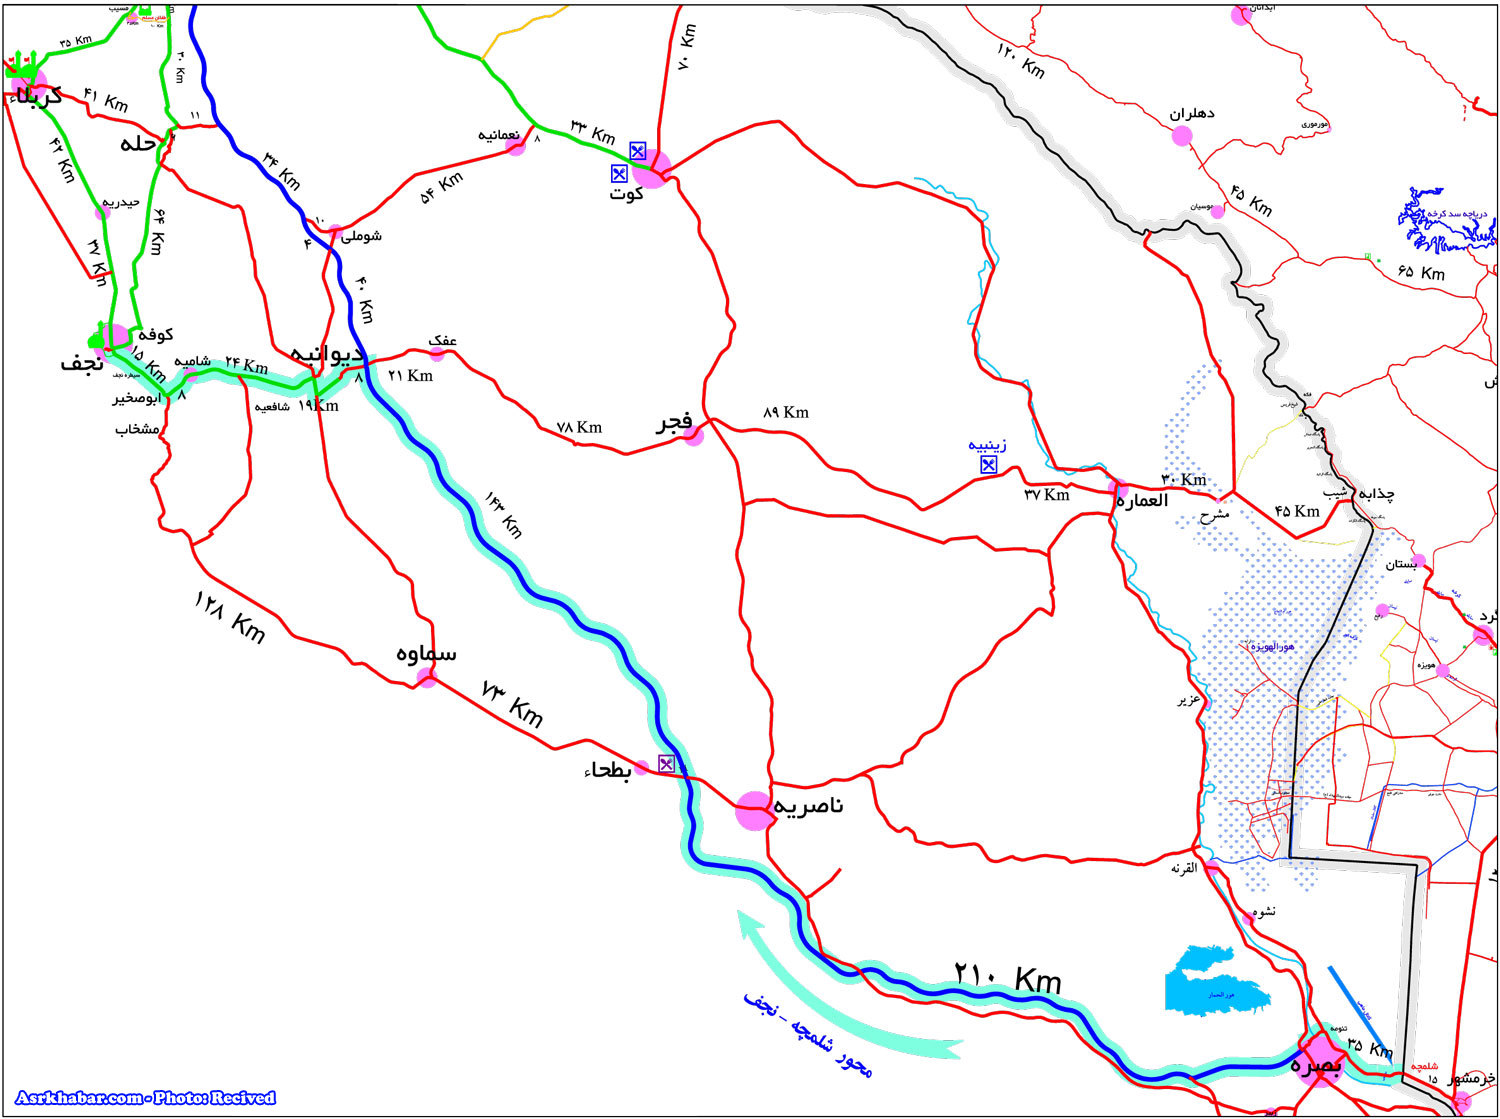 جزئیات پیاده روی اربعین/نقشه پیاده روی/نکات مهم برای پیاده روی اربعین/نقشه کامل مرزهای ایران + دانلود